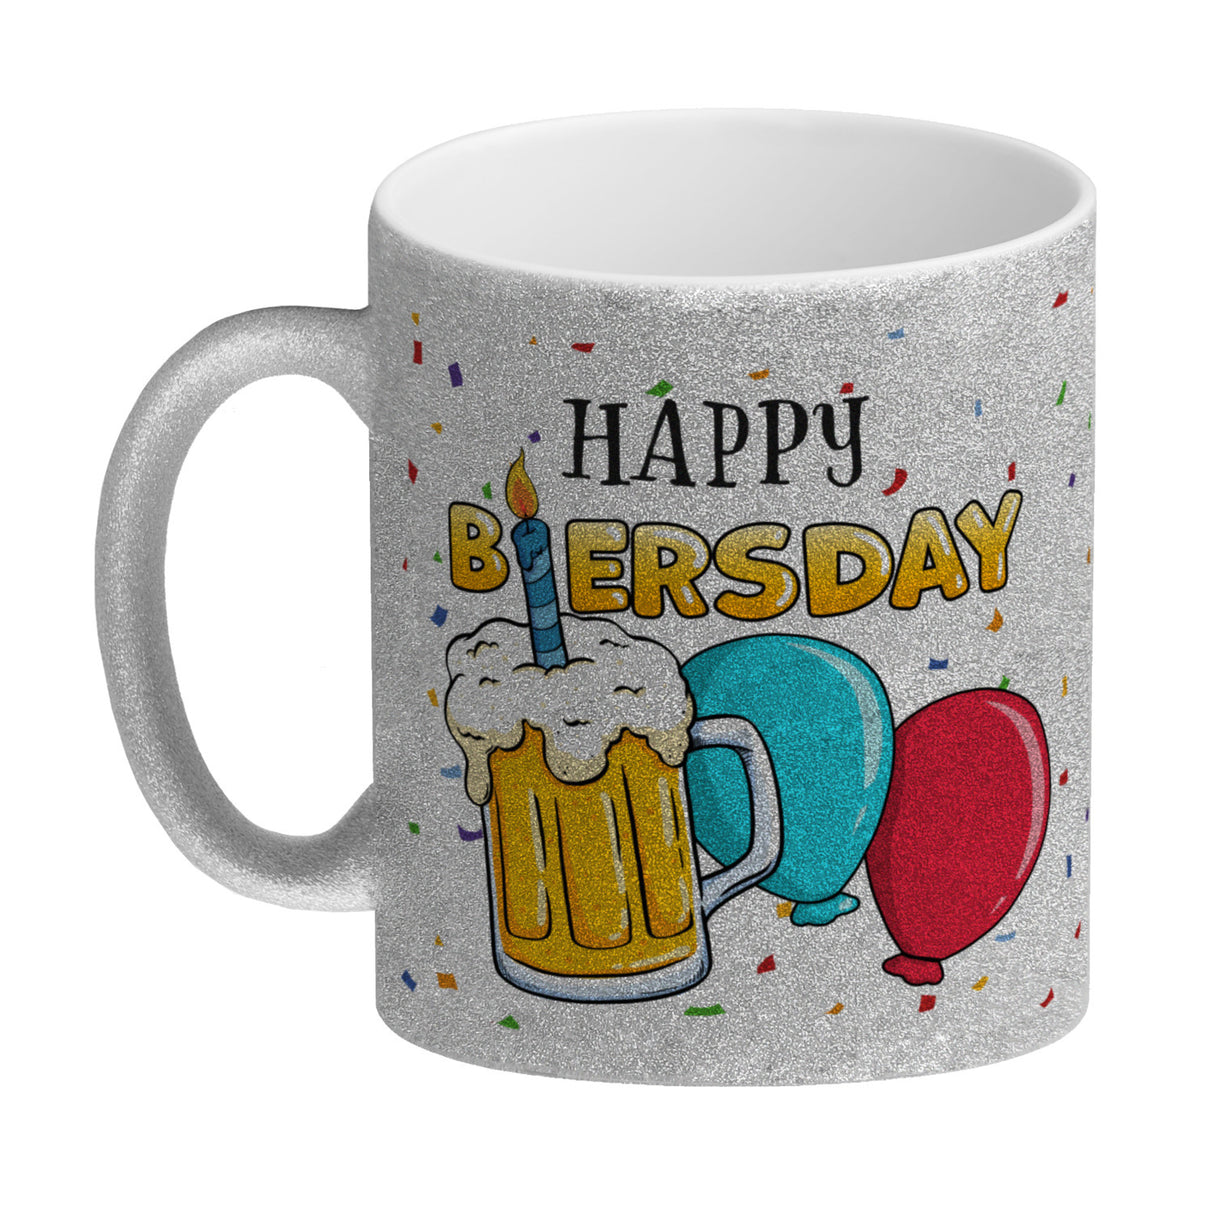 Happy Biersday Kaffeebecher mit Bier und Ballons